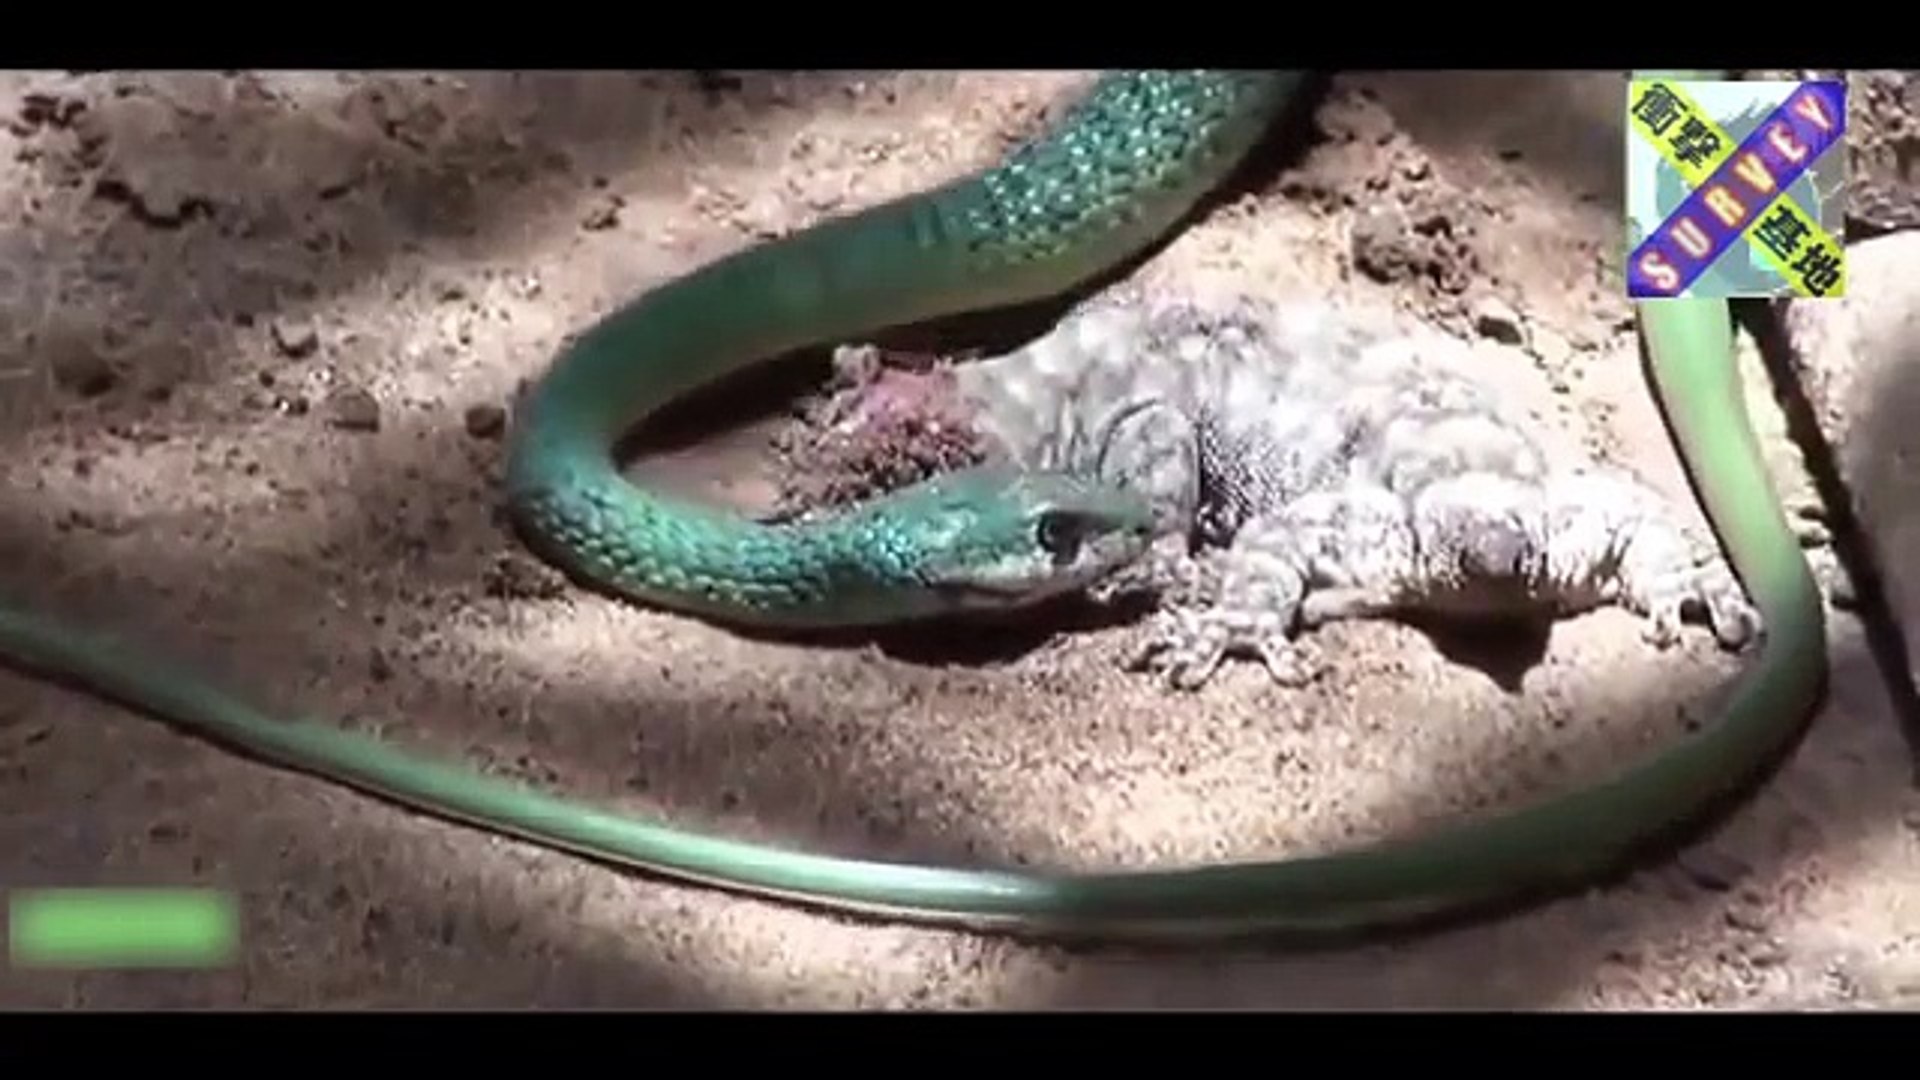 動物の捕食 蛇vs蛇の弱肉強食の世界 ヘビがヘビを喰らう衝撃映像 Video Dailymotion